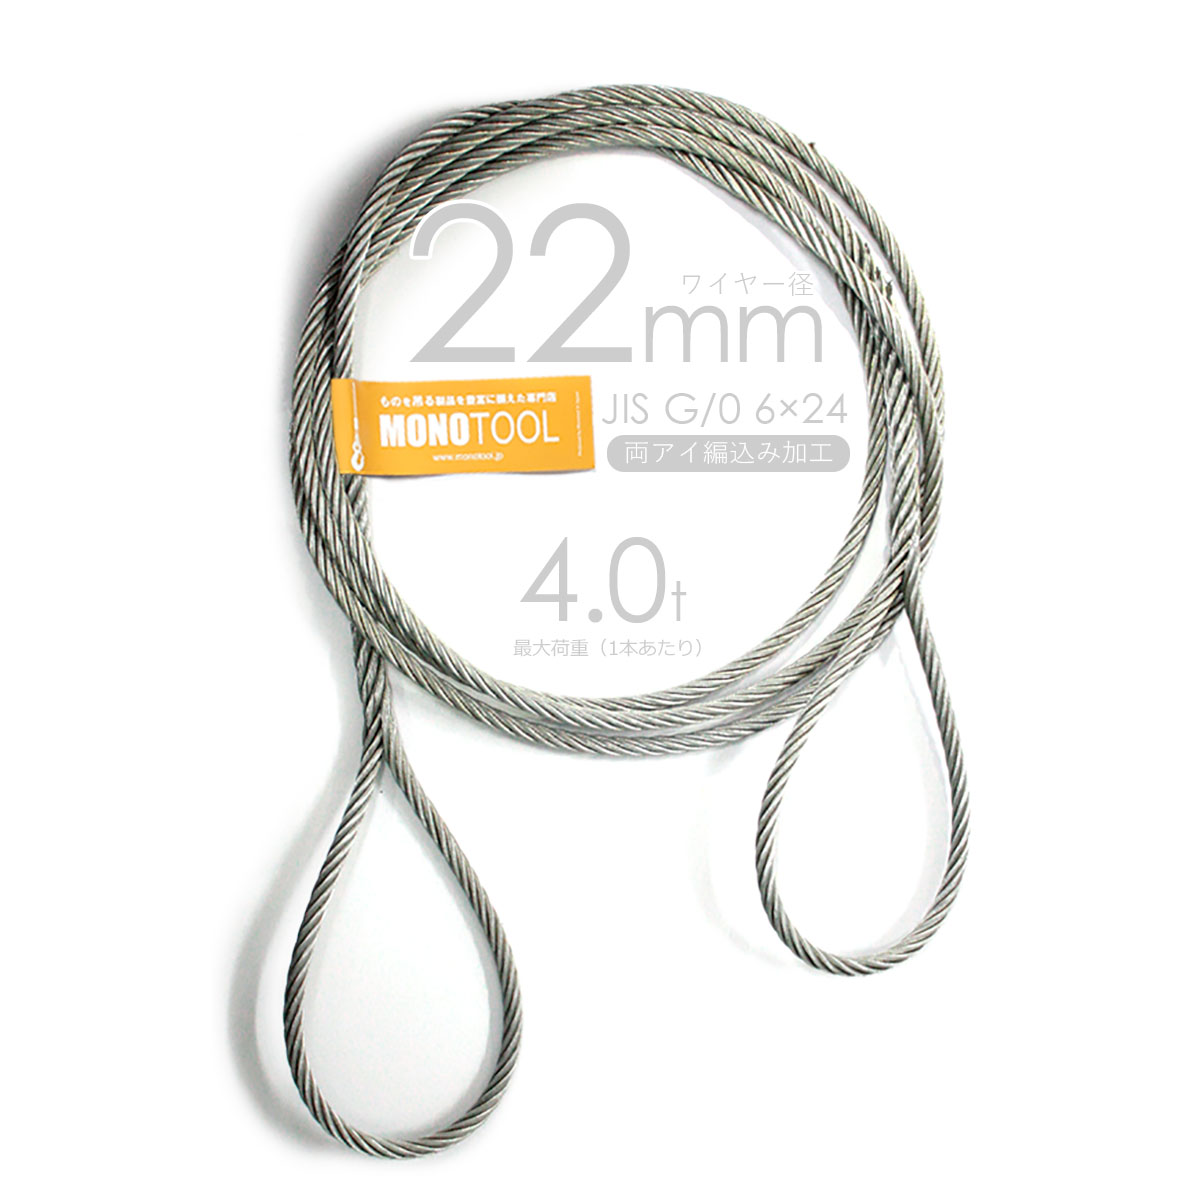 編み込み・フレミッシュ加工 JISメッキ(G/O) 22mm(7分) 玉掛ワイヤロープ 2本組